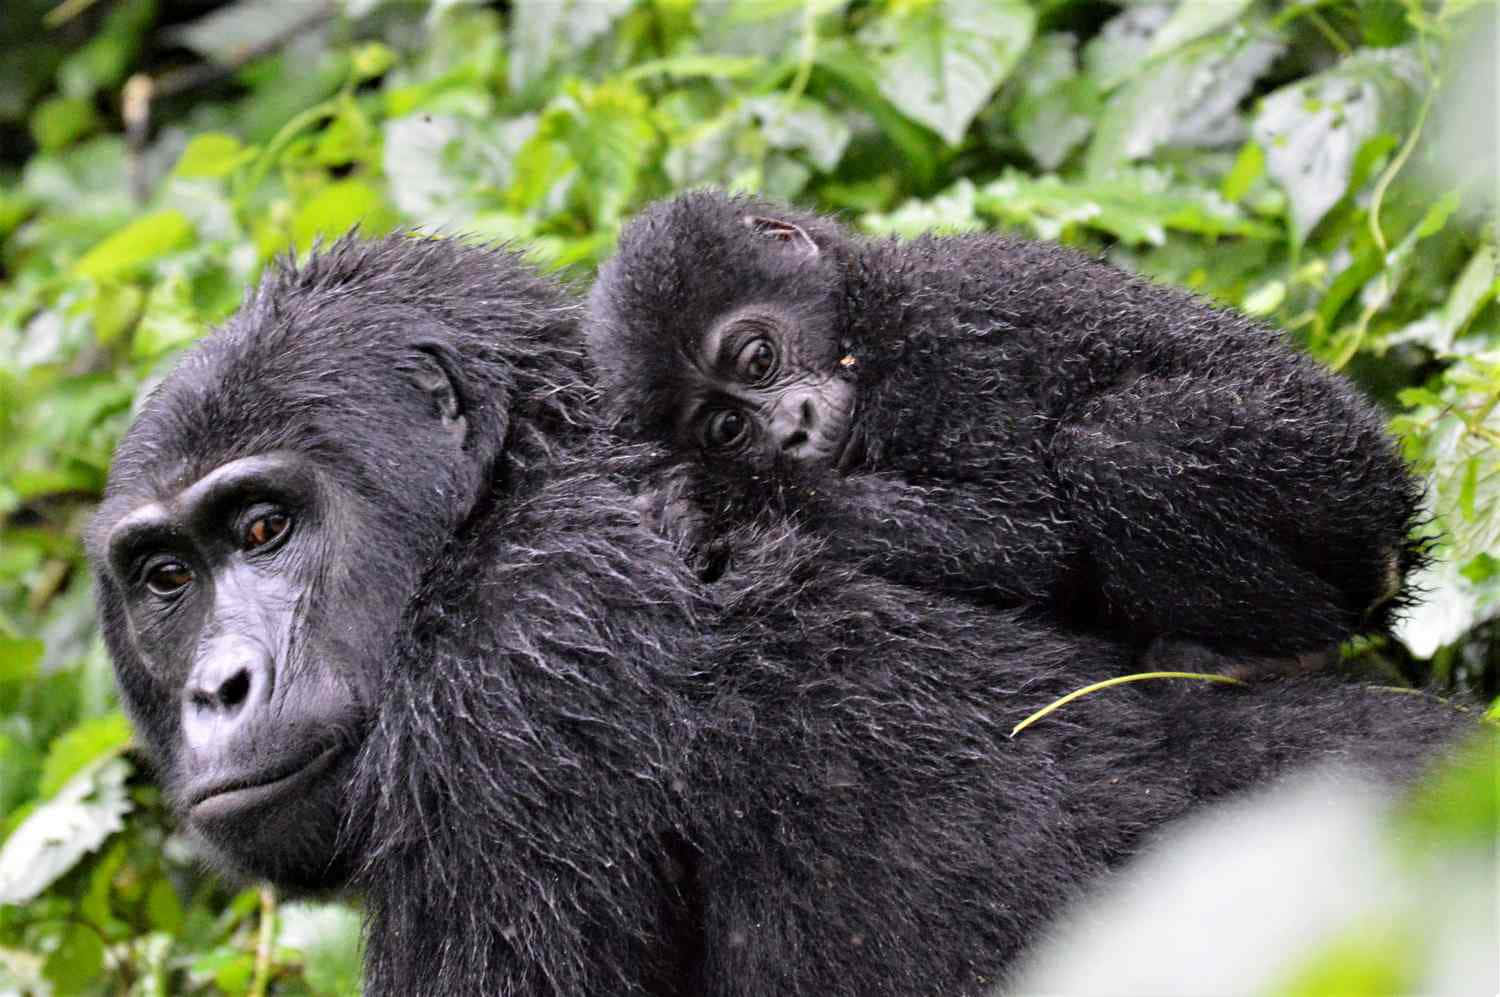 Unosplendido Primo Piano Di Un Gorilla Silverback Adulto Nel Suo Habitat Naturale.